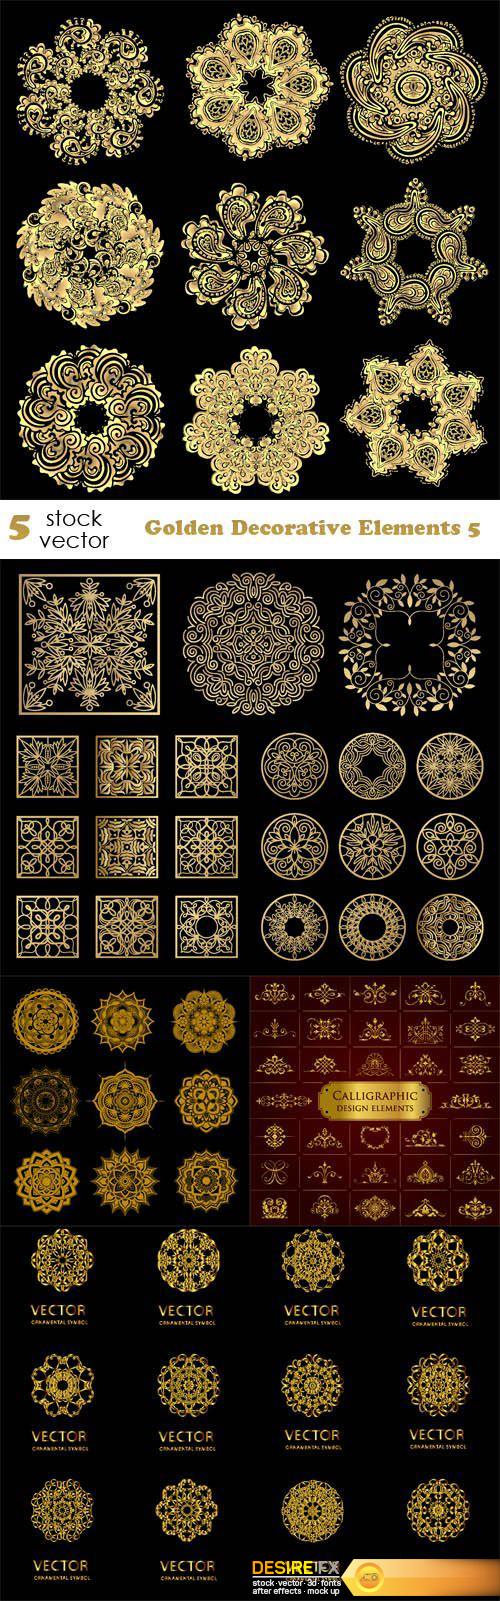 Vectors - Golden Decorative Elements 5